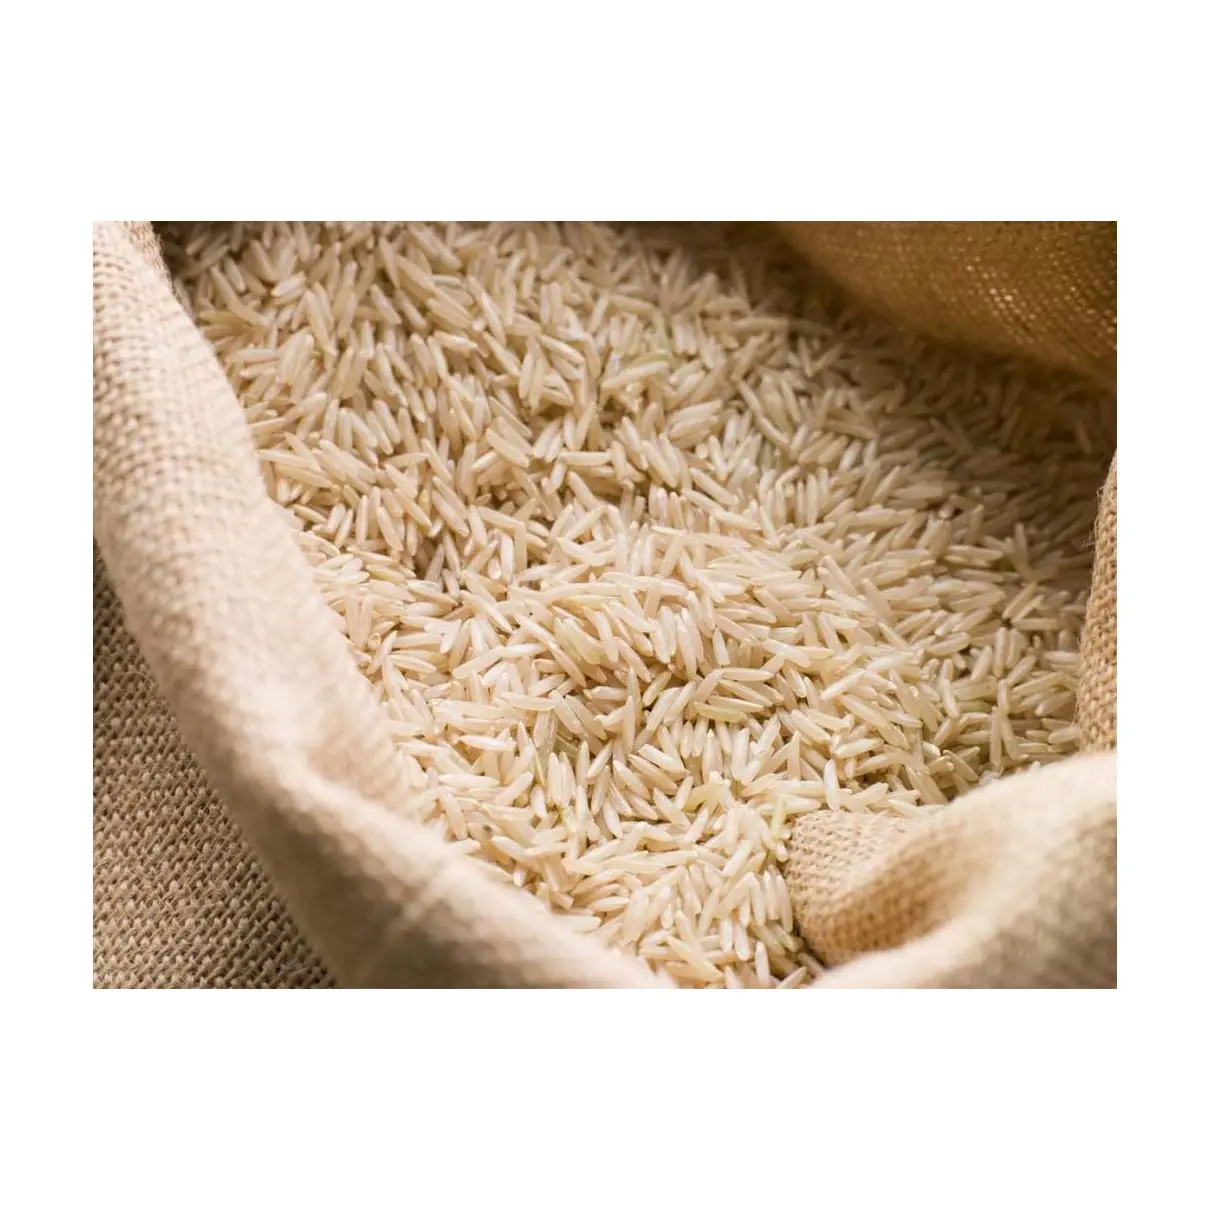 Riz étuvé avec 5% de riz Basmati cassé Sella Riz grain 0 mélange 24 mois endroit sec